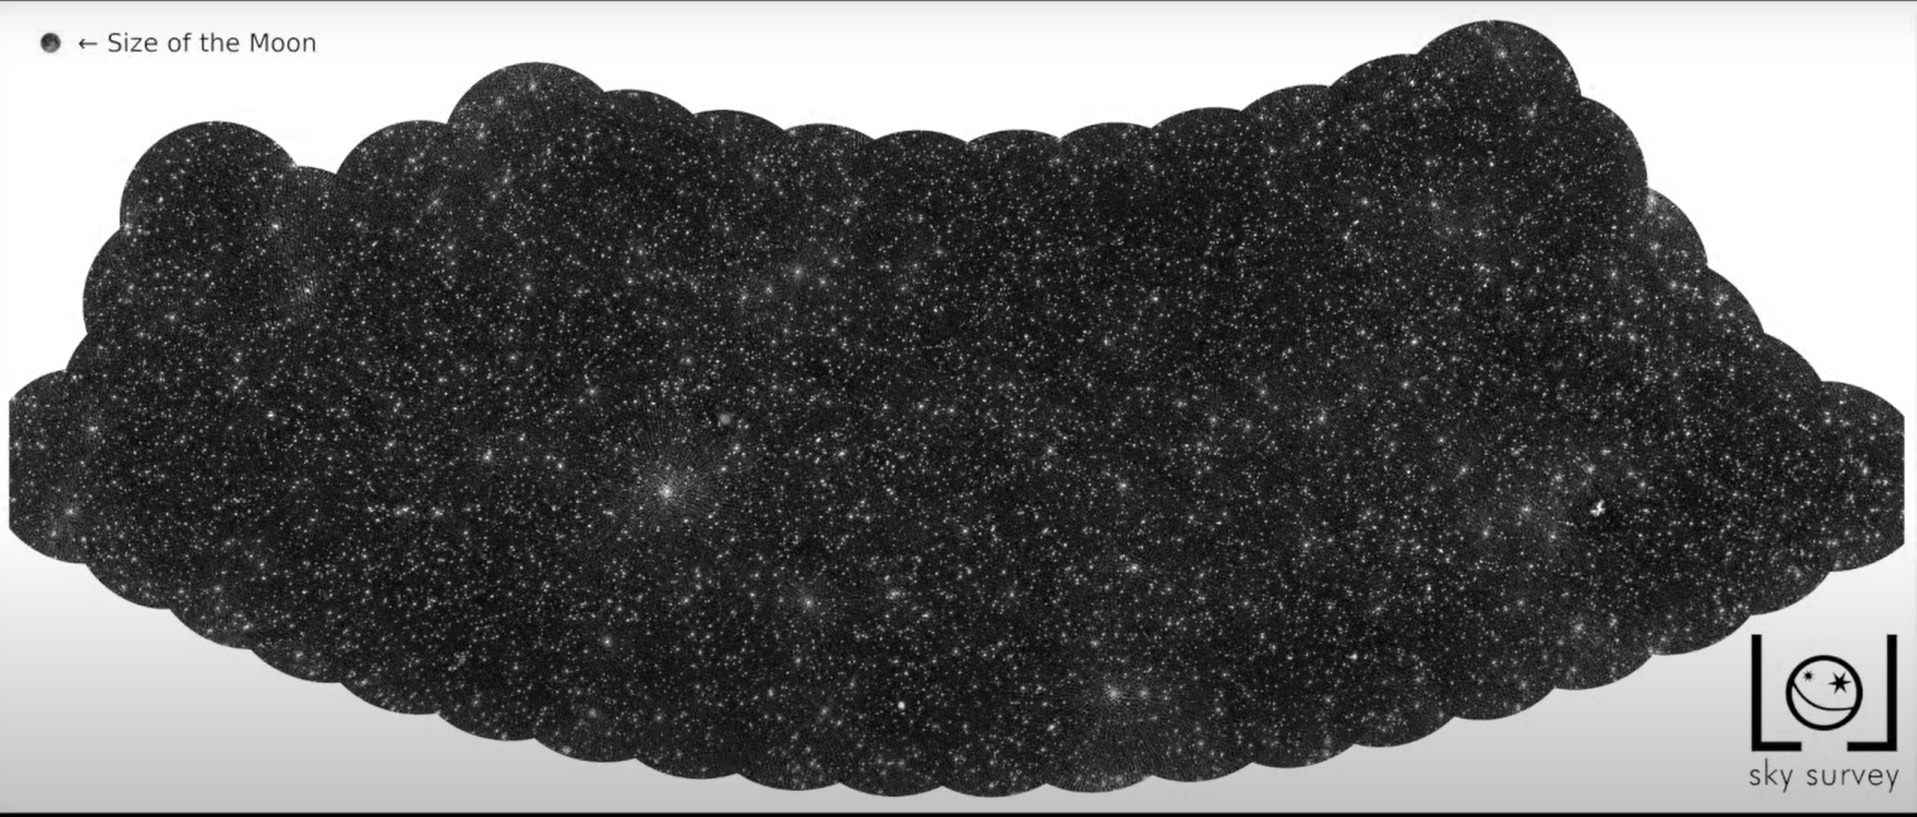 图片中的白色星点不是恒星或星系而是黑洞。（LOFAR/LOL 调查）